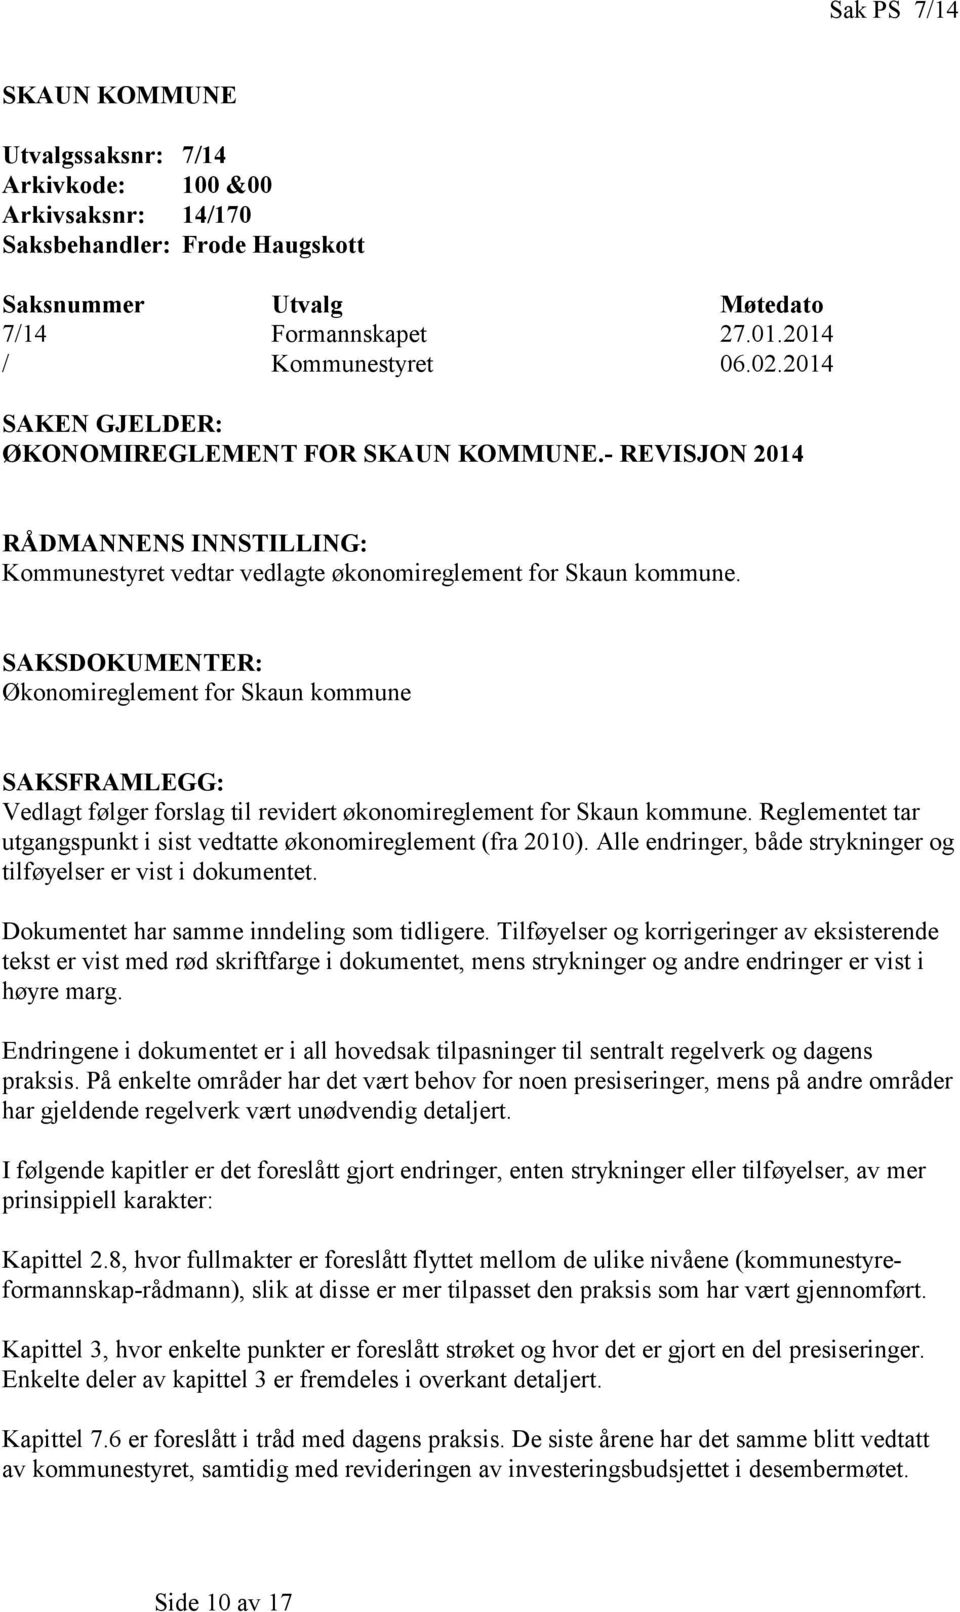 SAKSDOKUMENTER: Økonomireglement for Skaun kommune SAKSFRAMLEGG: Vedlagt følger forslag til revidert økonomireglement for Skaun kommune.